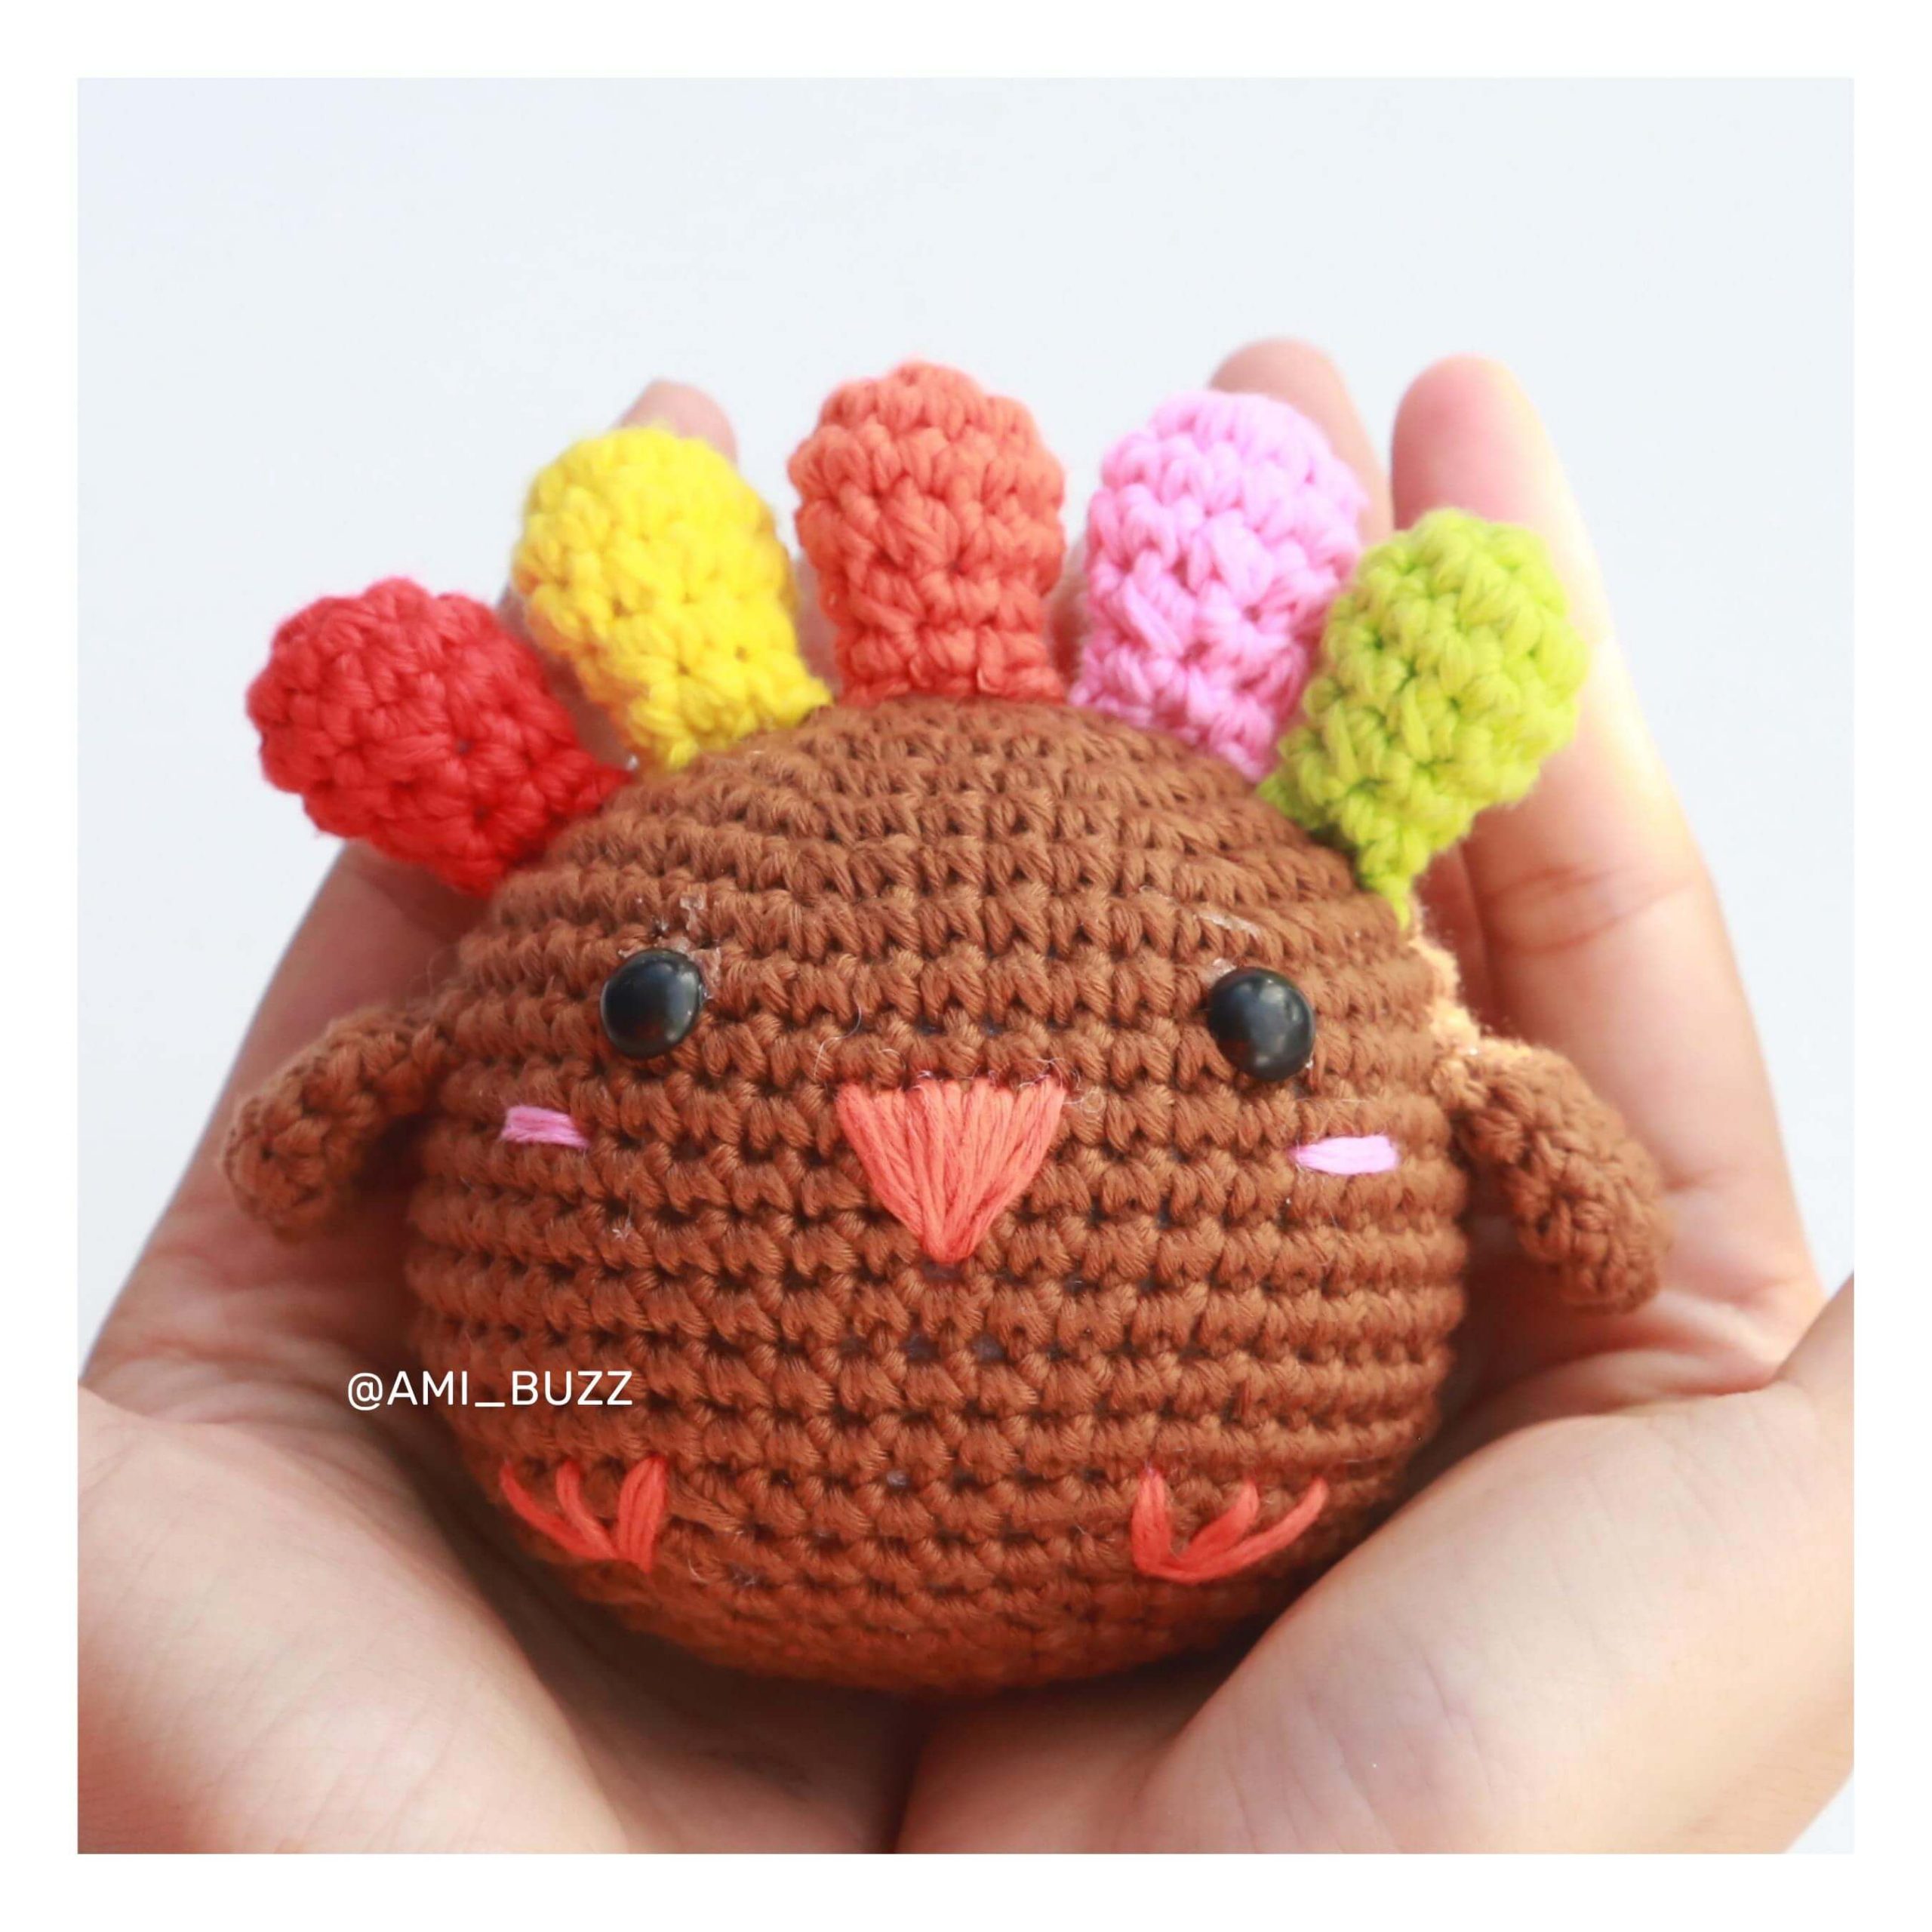 chicken-amigurumi-crochet-pattern-amibuzz (7)